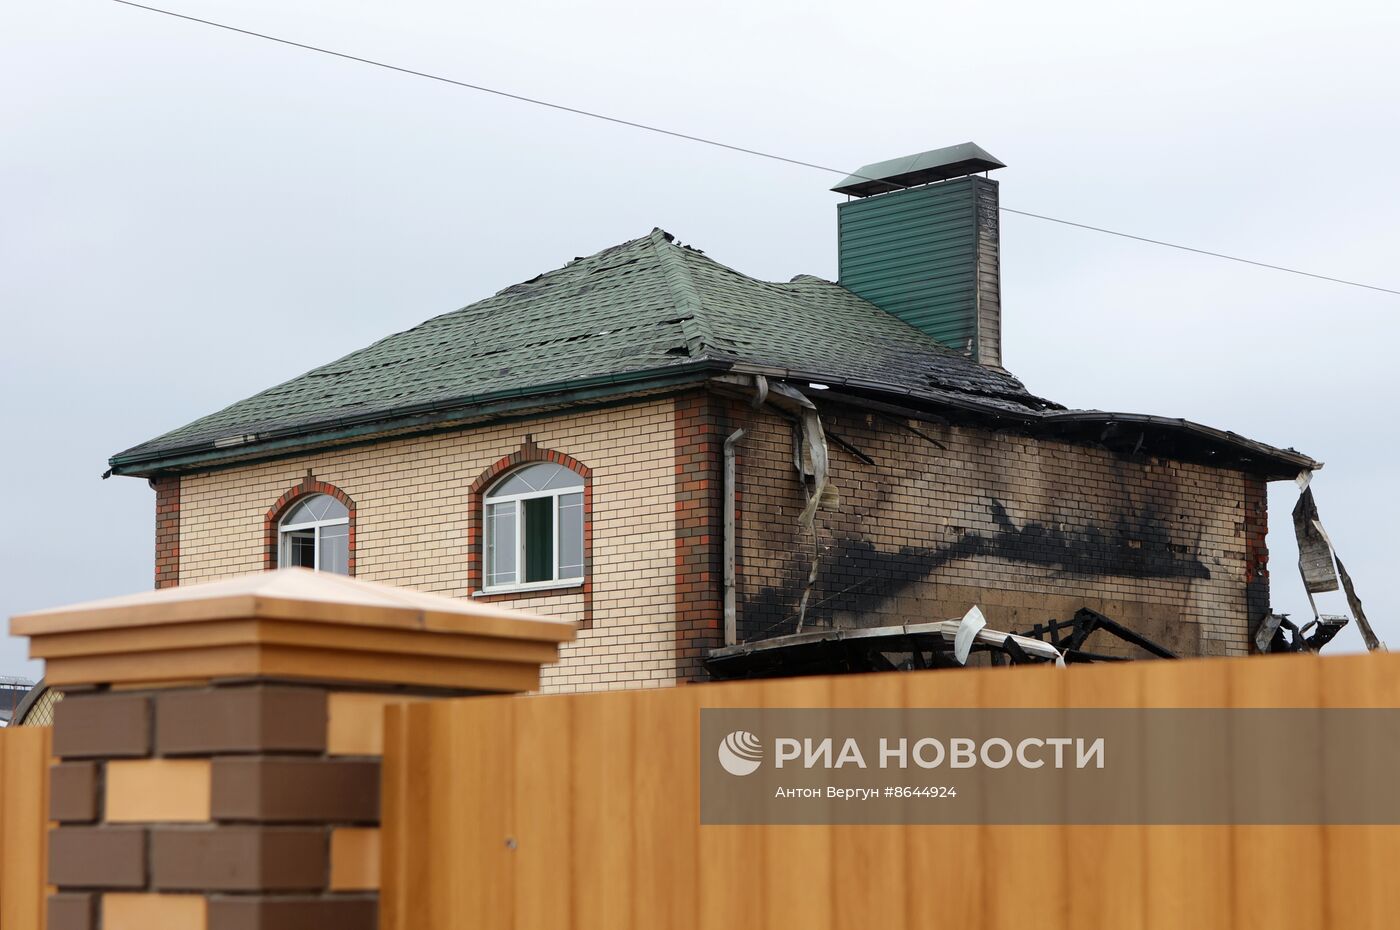 Последствия обстрела в Белгородской области